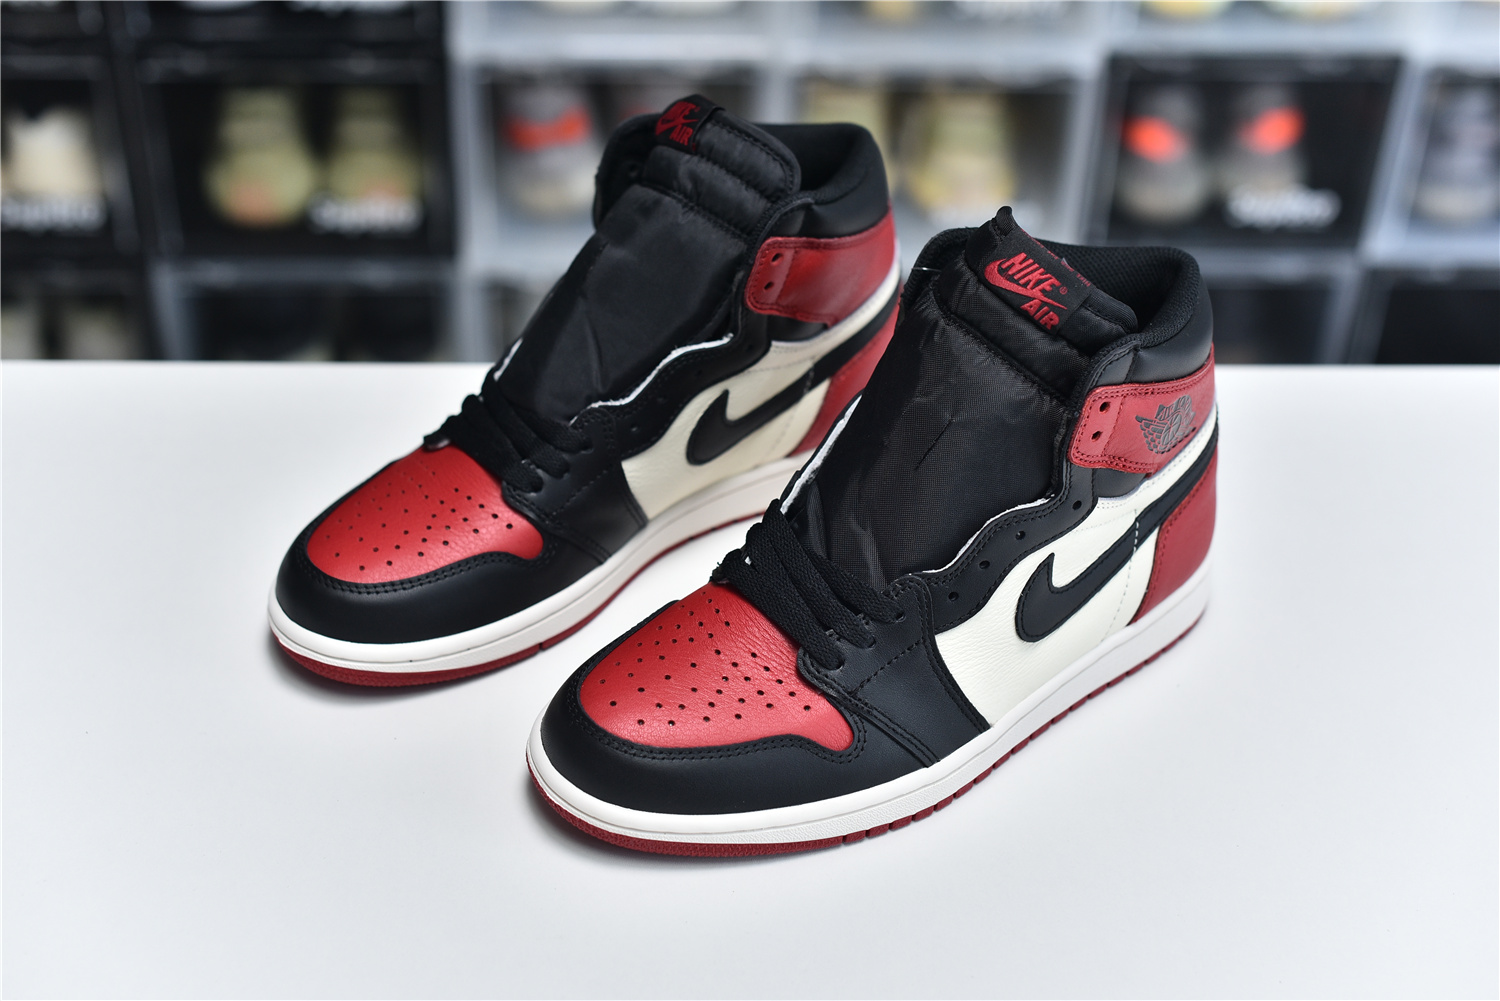 Nike Air Jordan 1 Retro High Og Red Black White Men Sneakers 555088 610 Kickbulk 8 - www.kickbulk.co